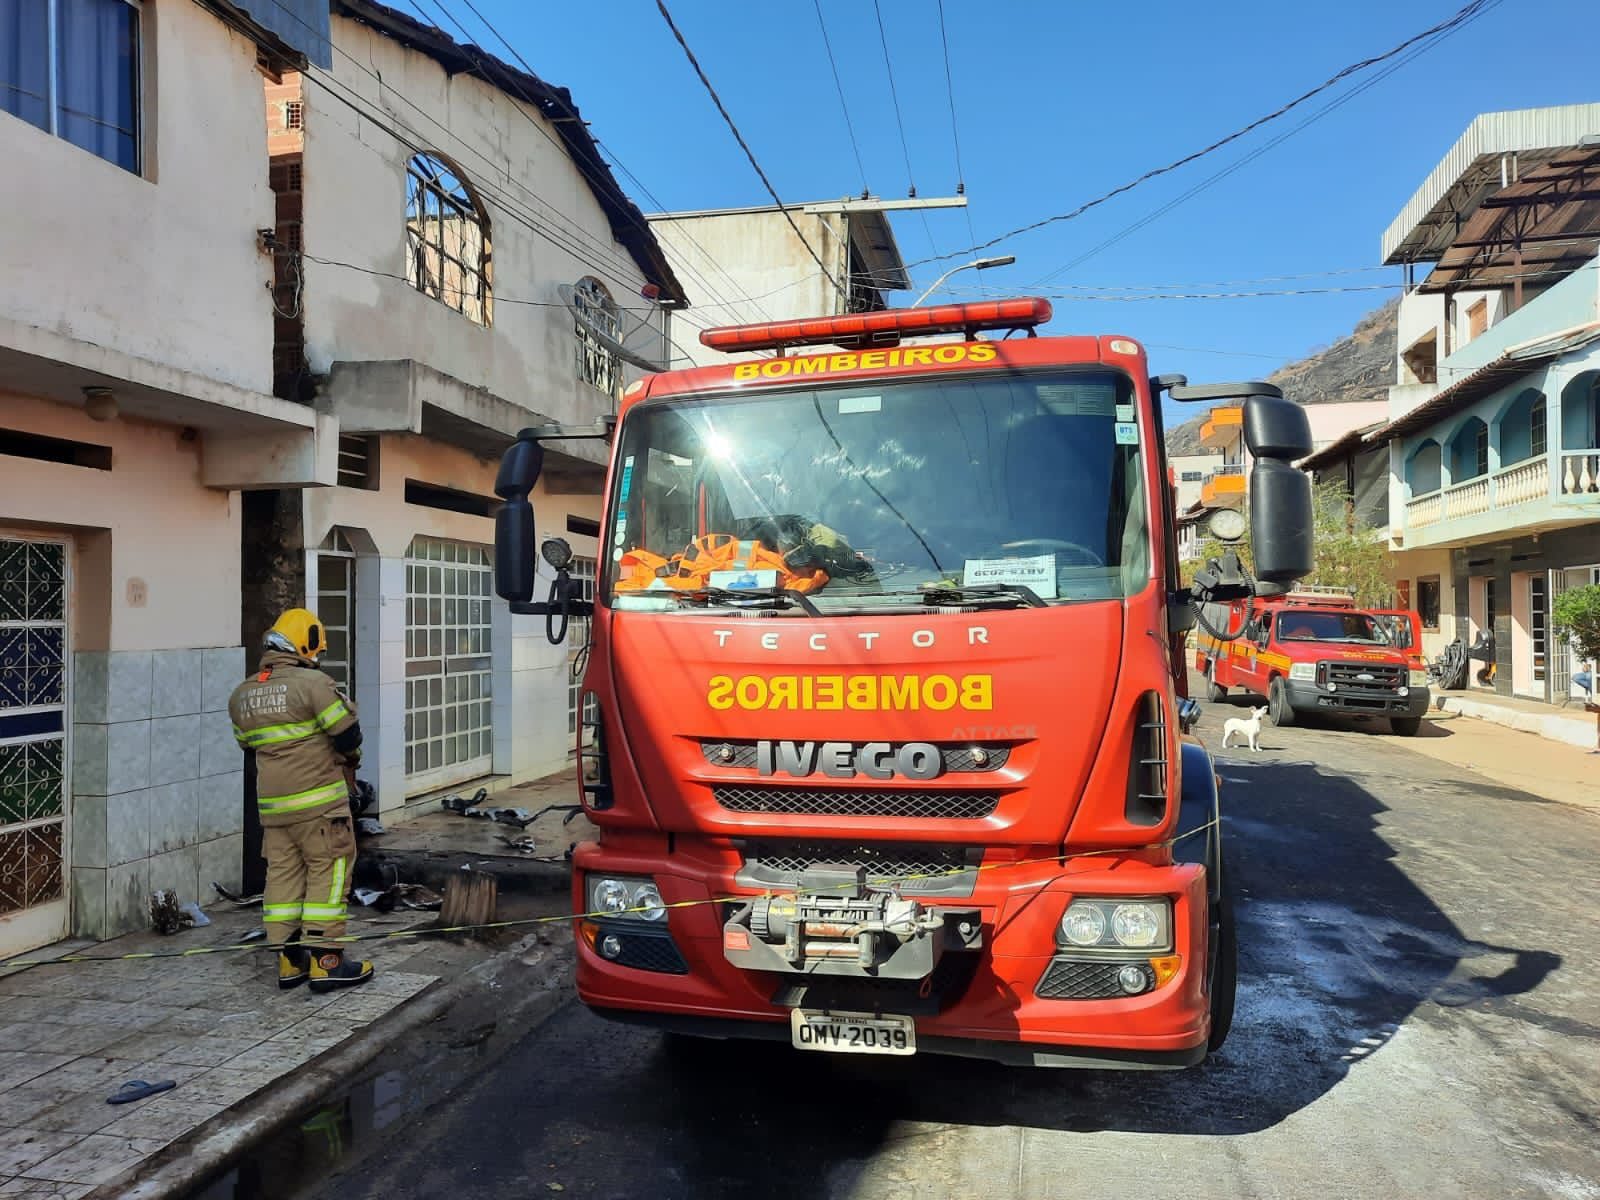 Tragédia em São João do Oriente Criança morre em incêndio residencial